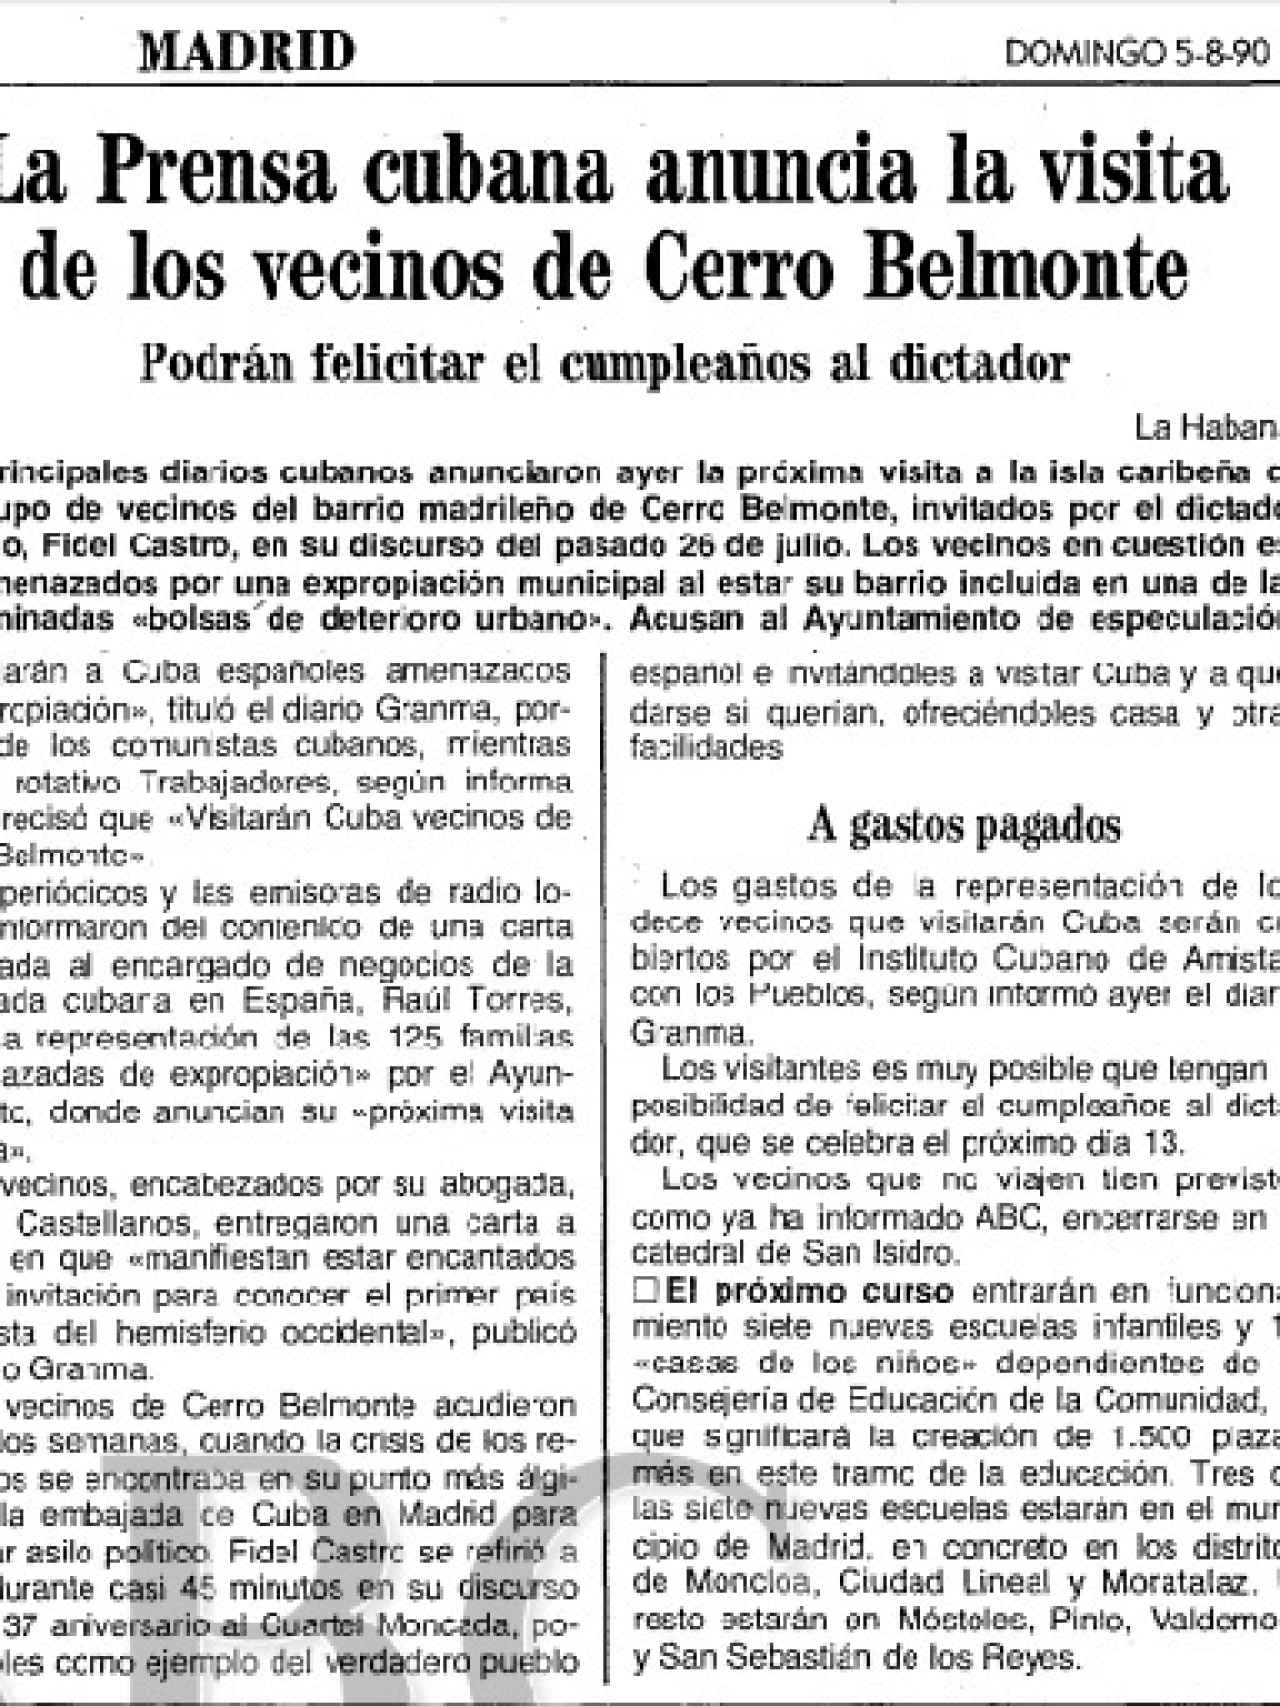 La prensa cubana hablaba de Cerro Belmonte y el diario ABC se hacía eco